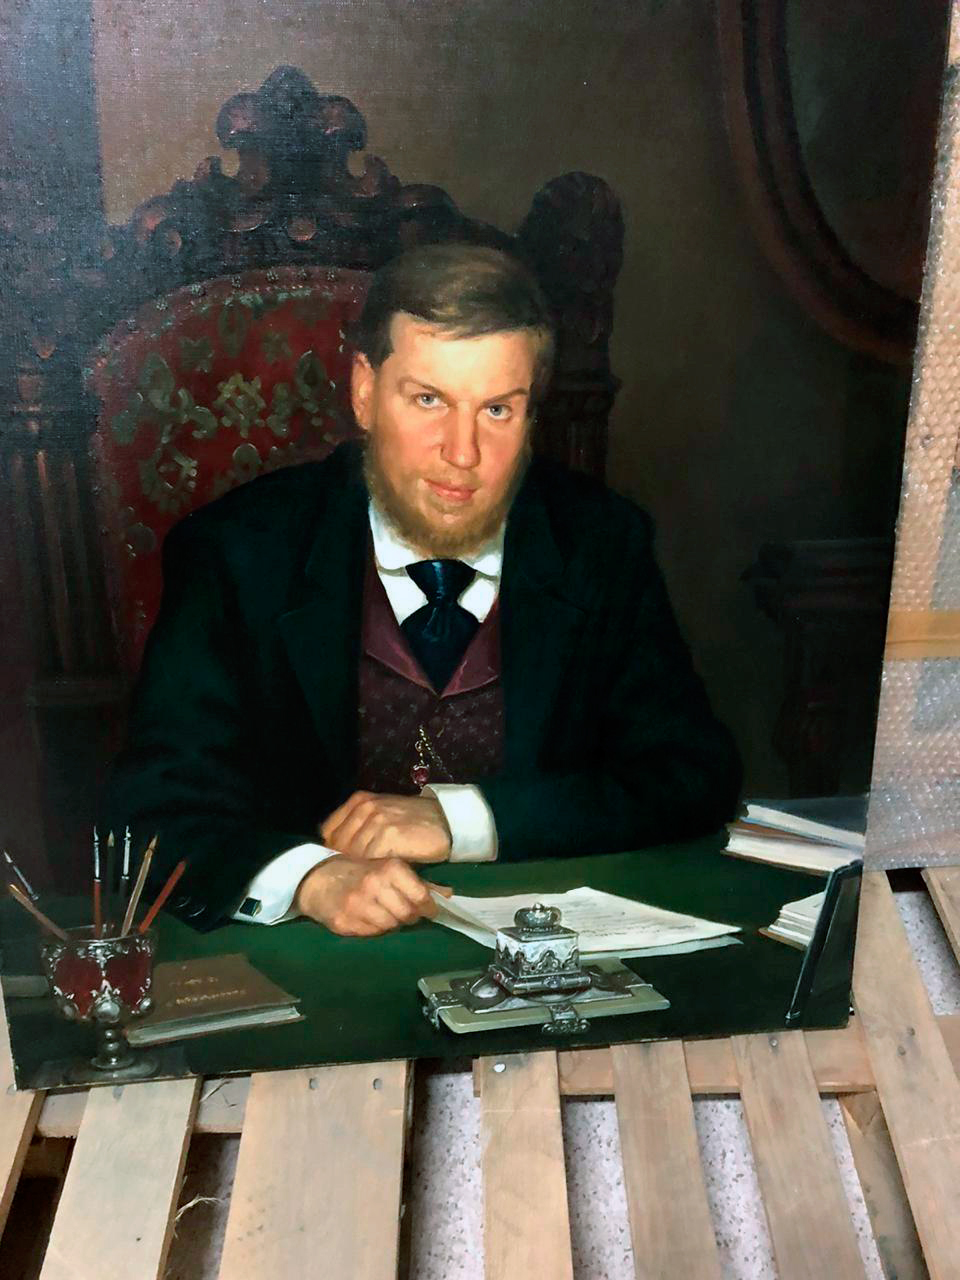 Среди найденых следователями картин из Института русского реалистического искусства было обнаружено полотно с изображением Алексея Ананьева.